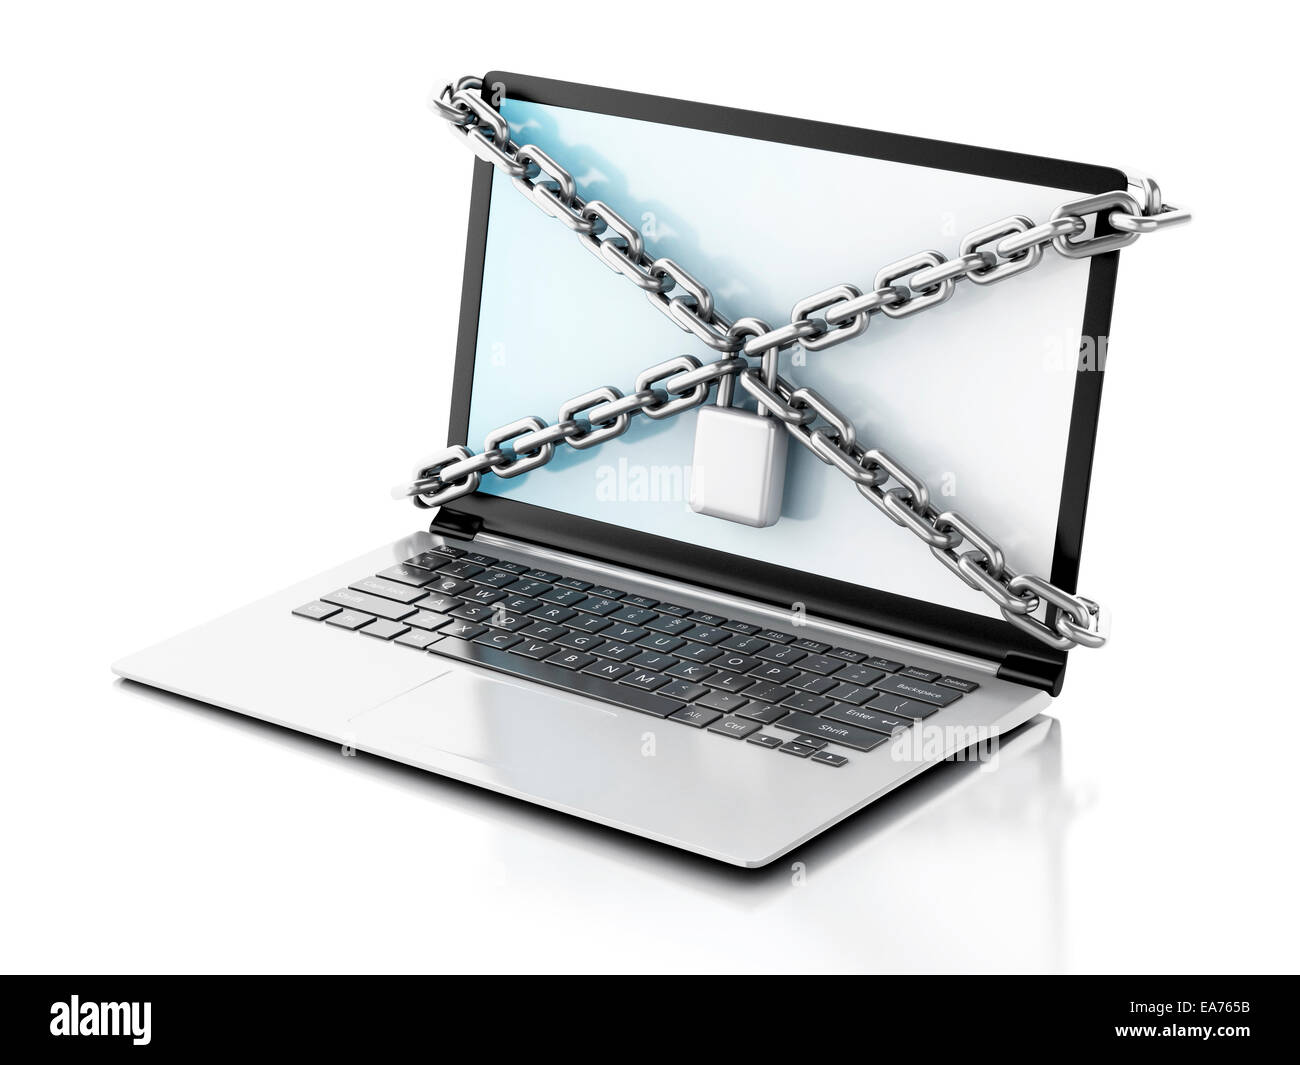 Image de l'ordinateur portable avec lock et la chaîne. Concept de sécurité des données.. 3d illustration Banque D'Images